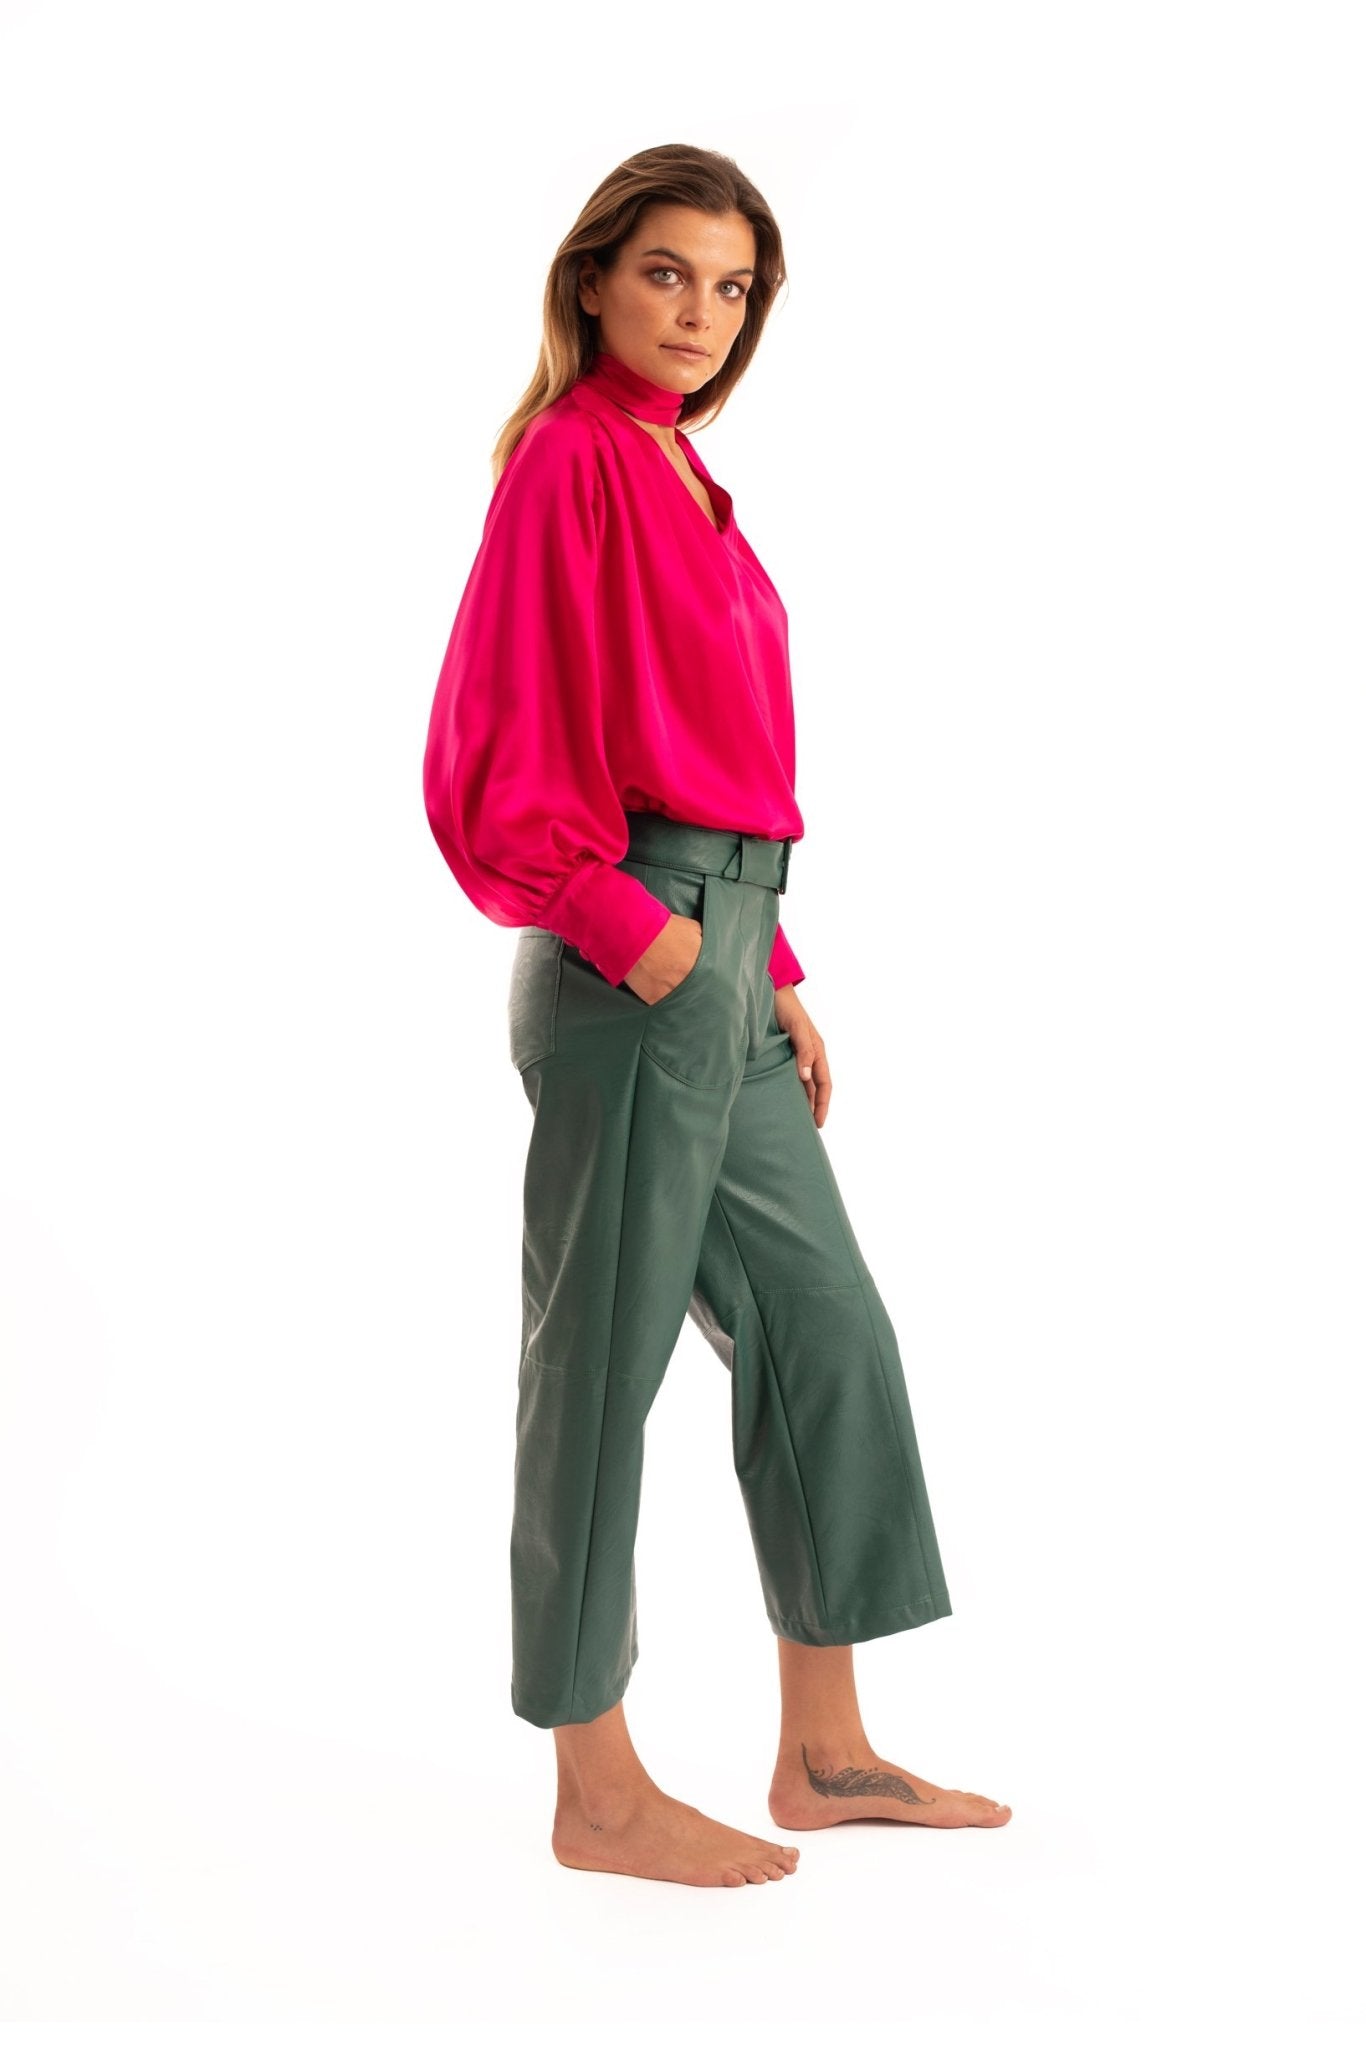 Green Pantalon Pants - NOPIN - The Clothing LoungeNOPIN